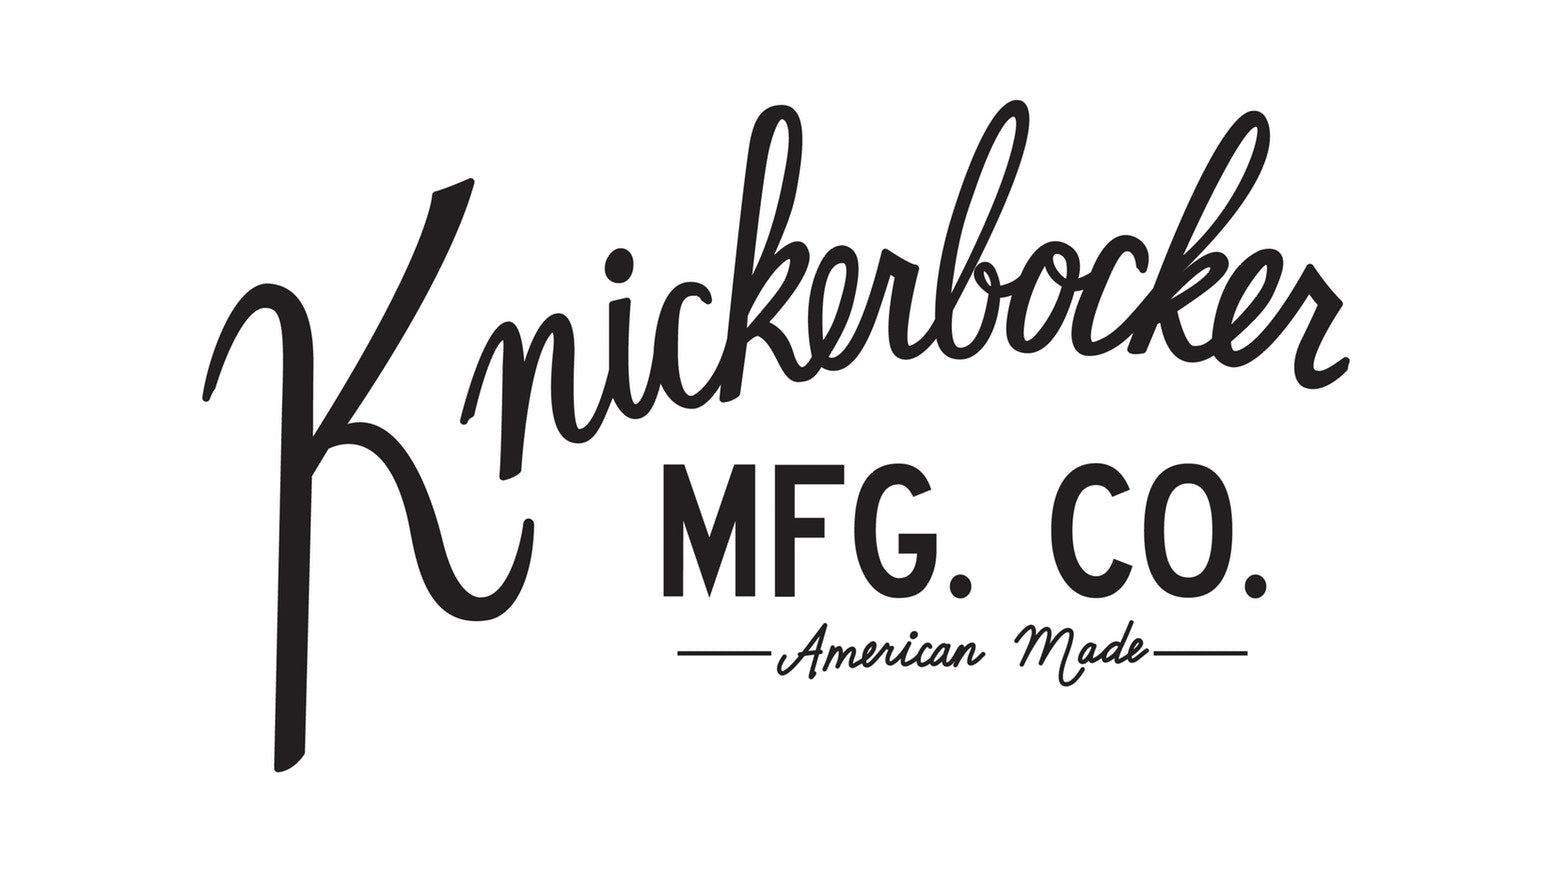 Knickerbocker Mfg. Co.